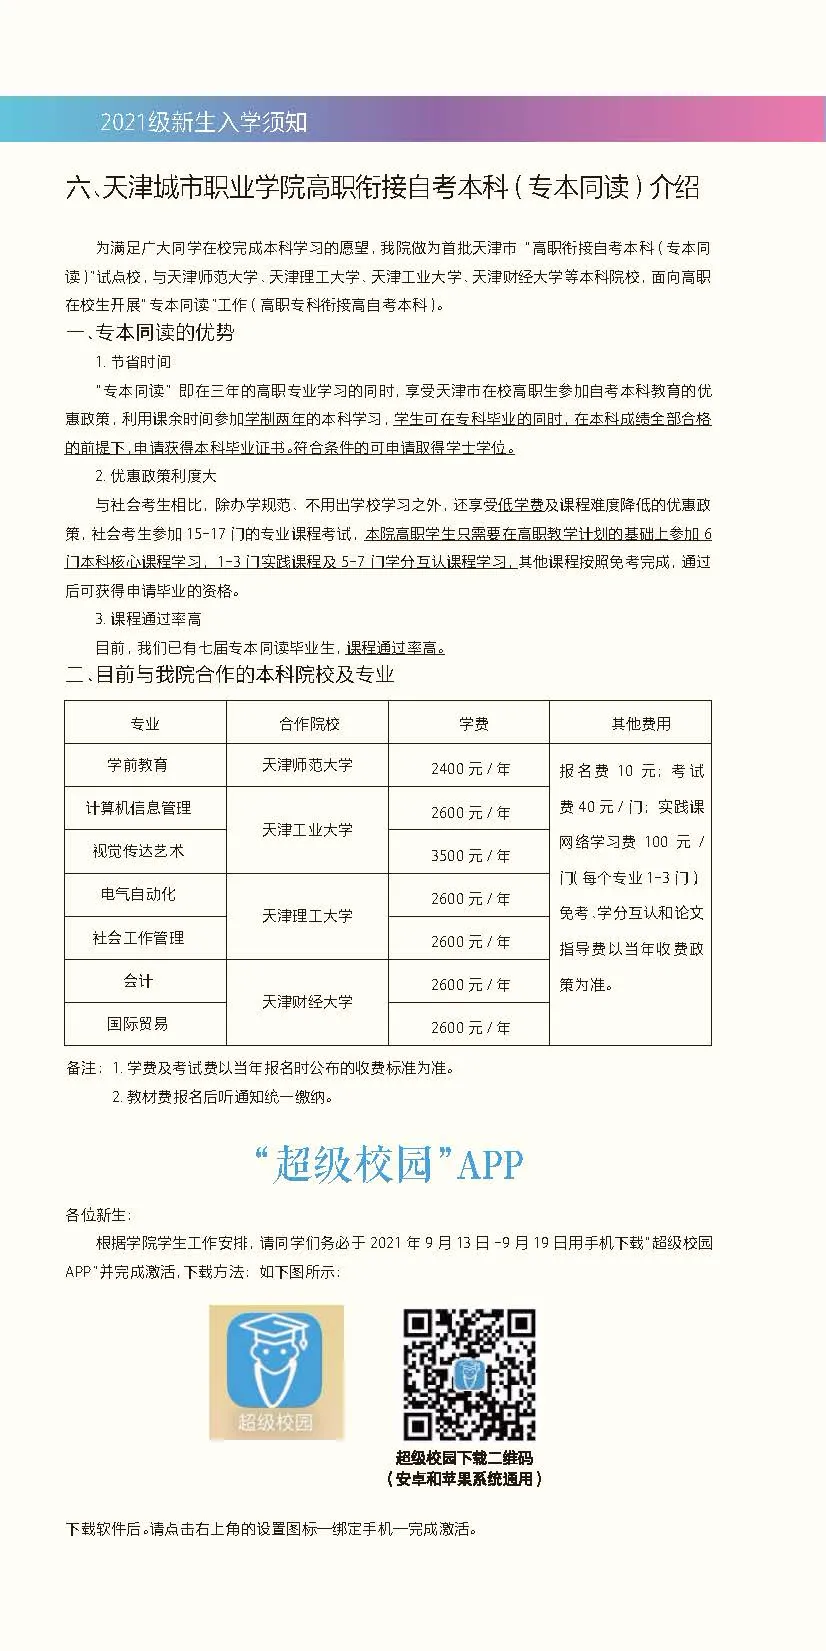 天津城市职业学院2021级新生入学须知（限天津春季高考新生、外省普通高考新生使用）